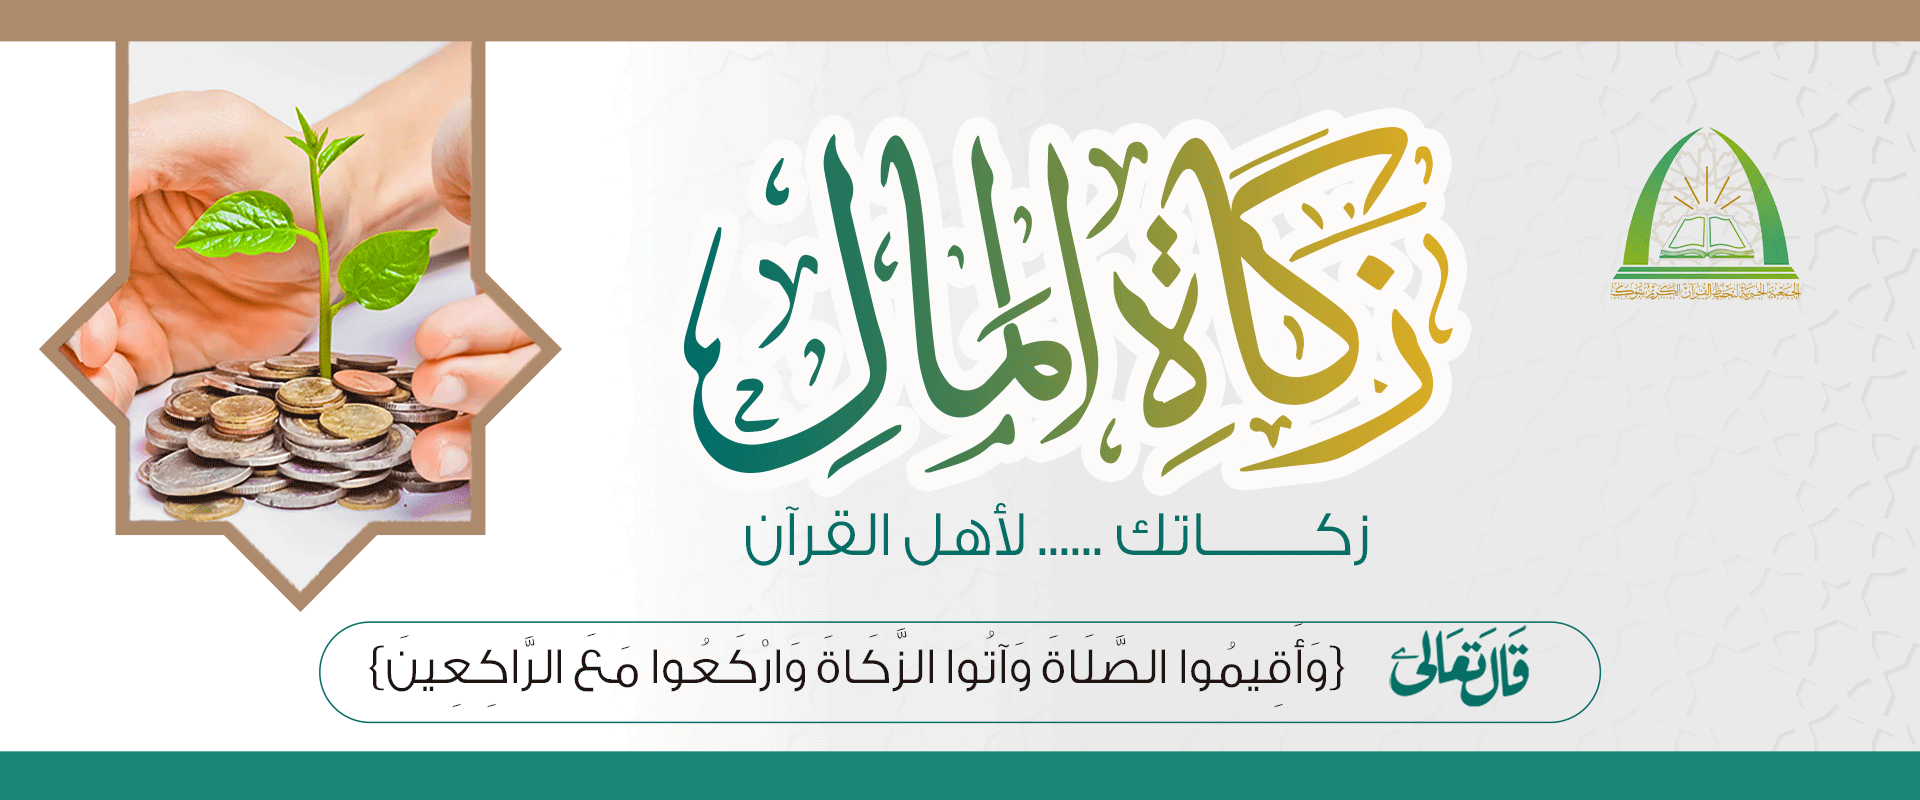 الجمعية الخيرية لتحفيظ القرآن الكريم بتبوك